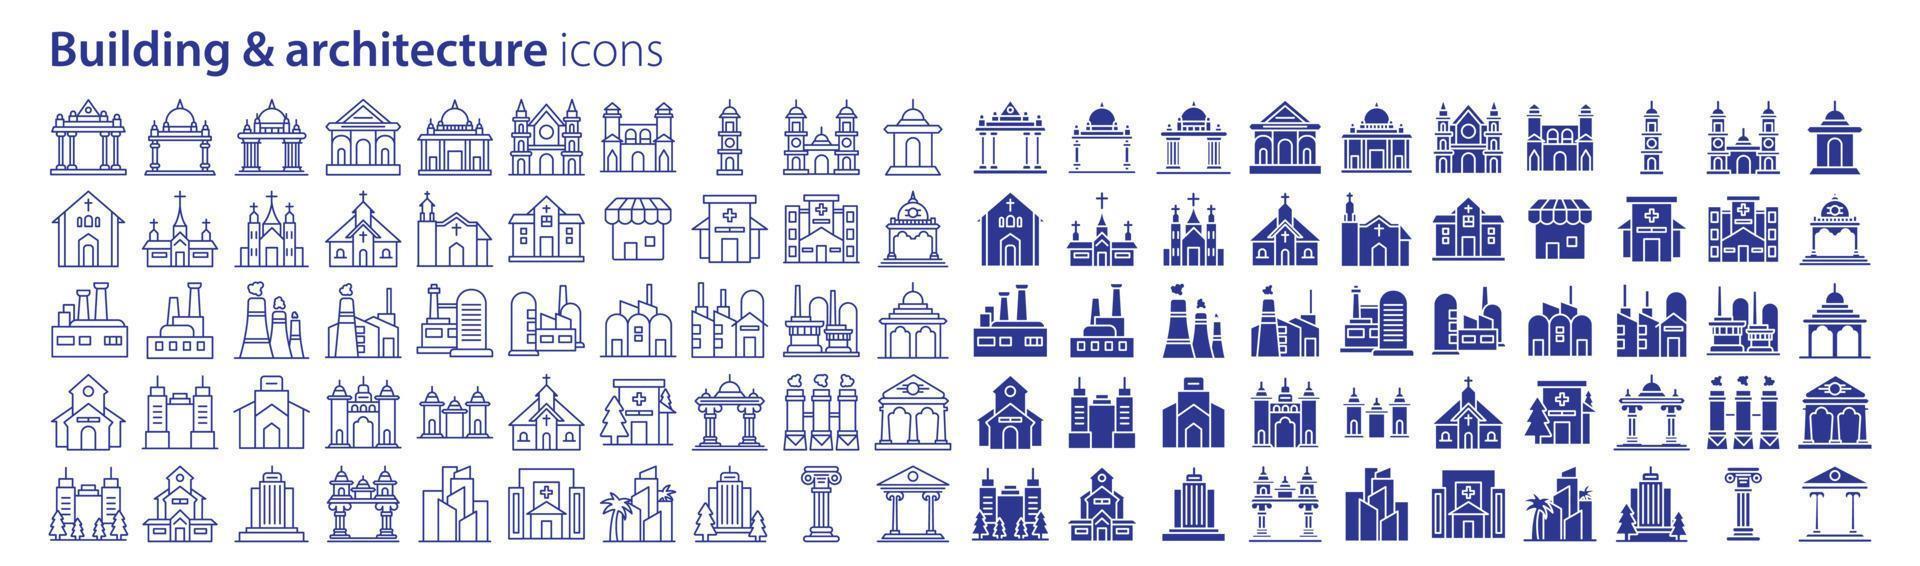 coleção de ícones relacionados a edifícios e arquitetura, incluindo ícones como imóveis, propriedades, edifícios, arquitetura e muito mais. ilustrações vetoriais, pixel perfeito vetor